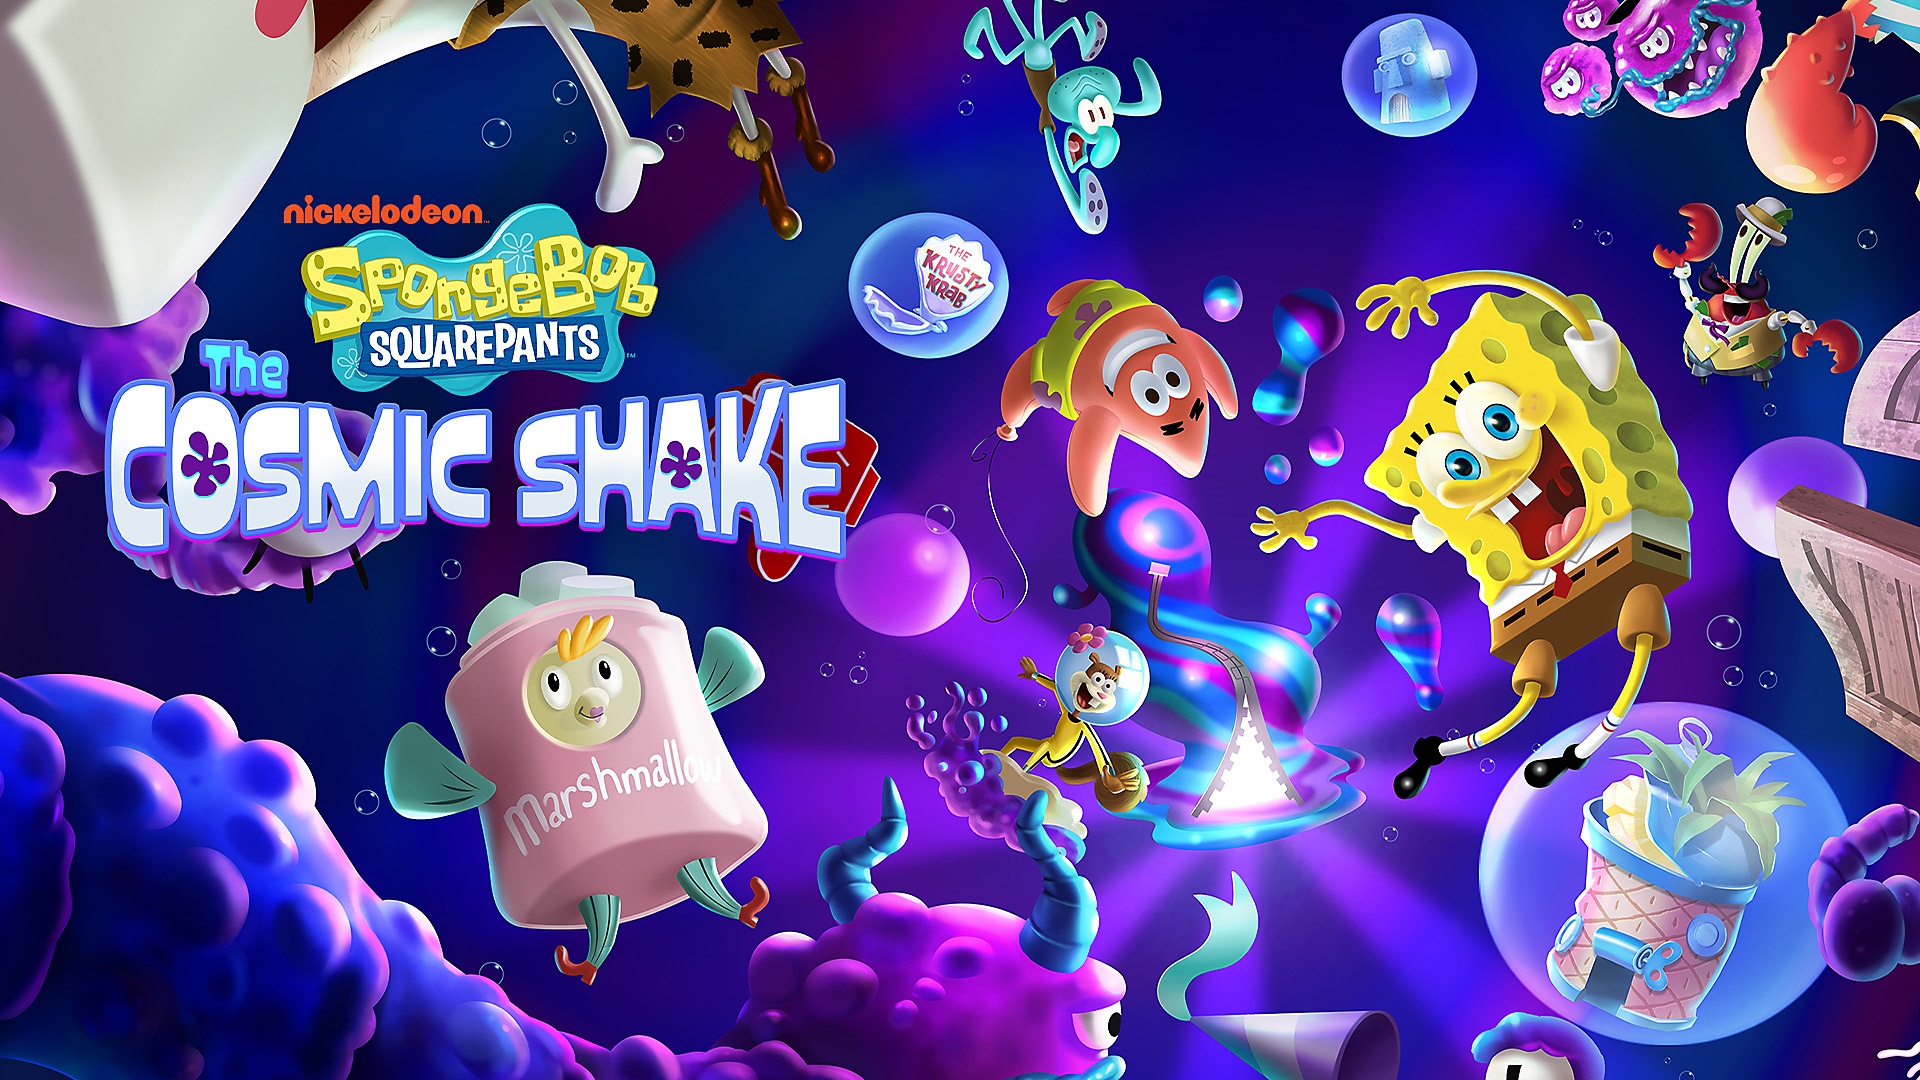 SvampBob, Patrik och andra flyter runt i ett undervattenskosmos i SpongeBob SquarePants: The Cosmic Shake på PS4 och PS5